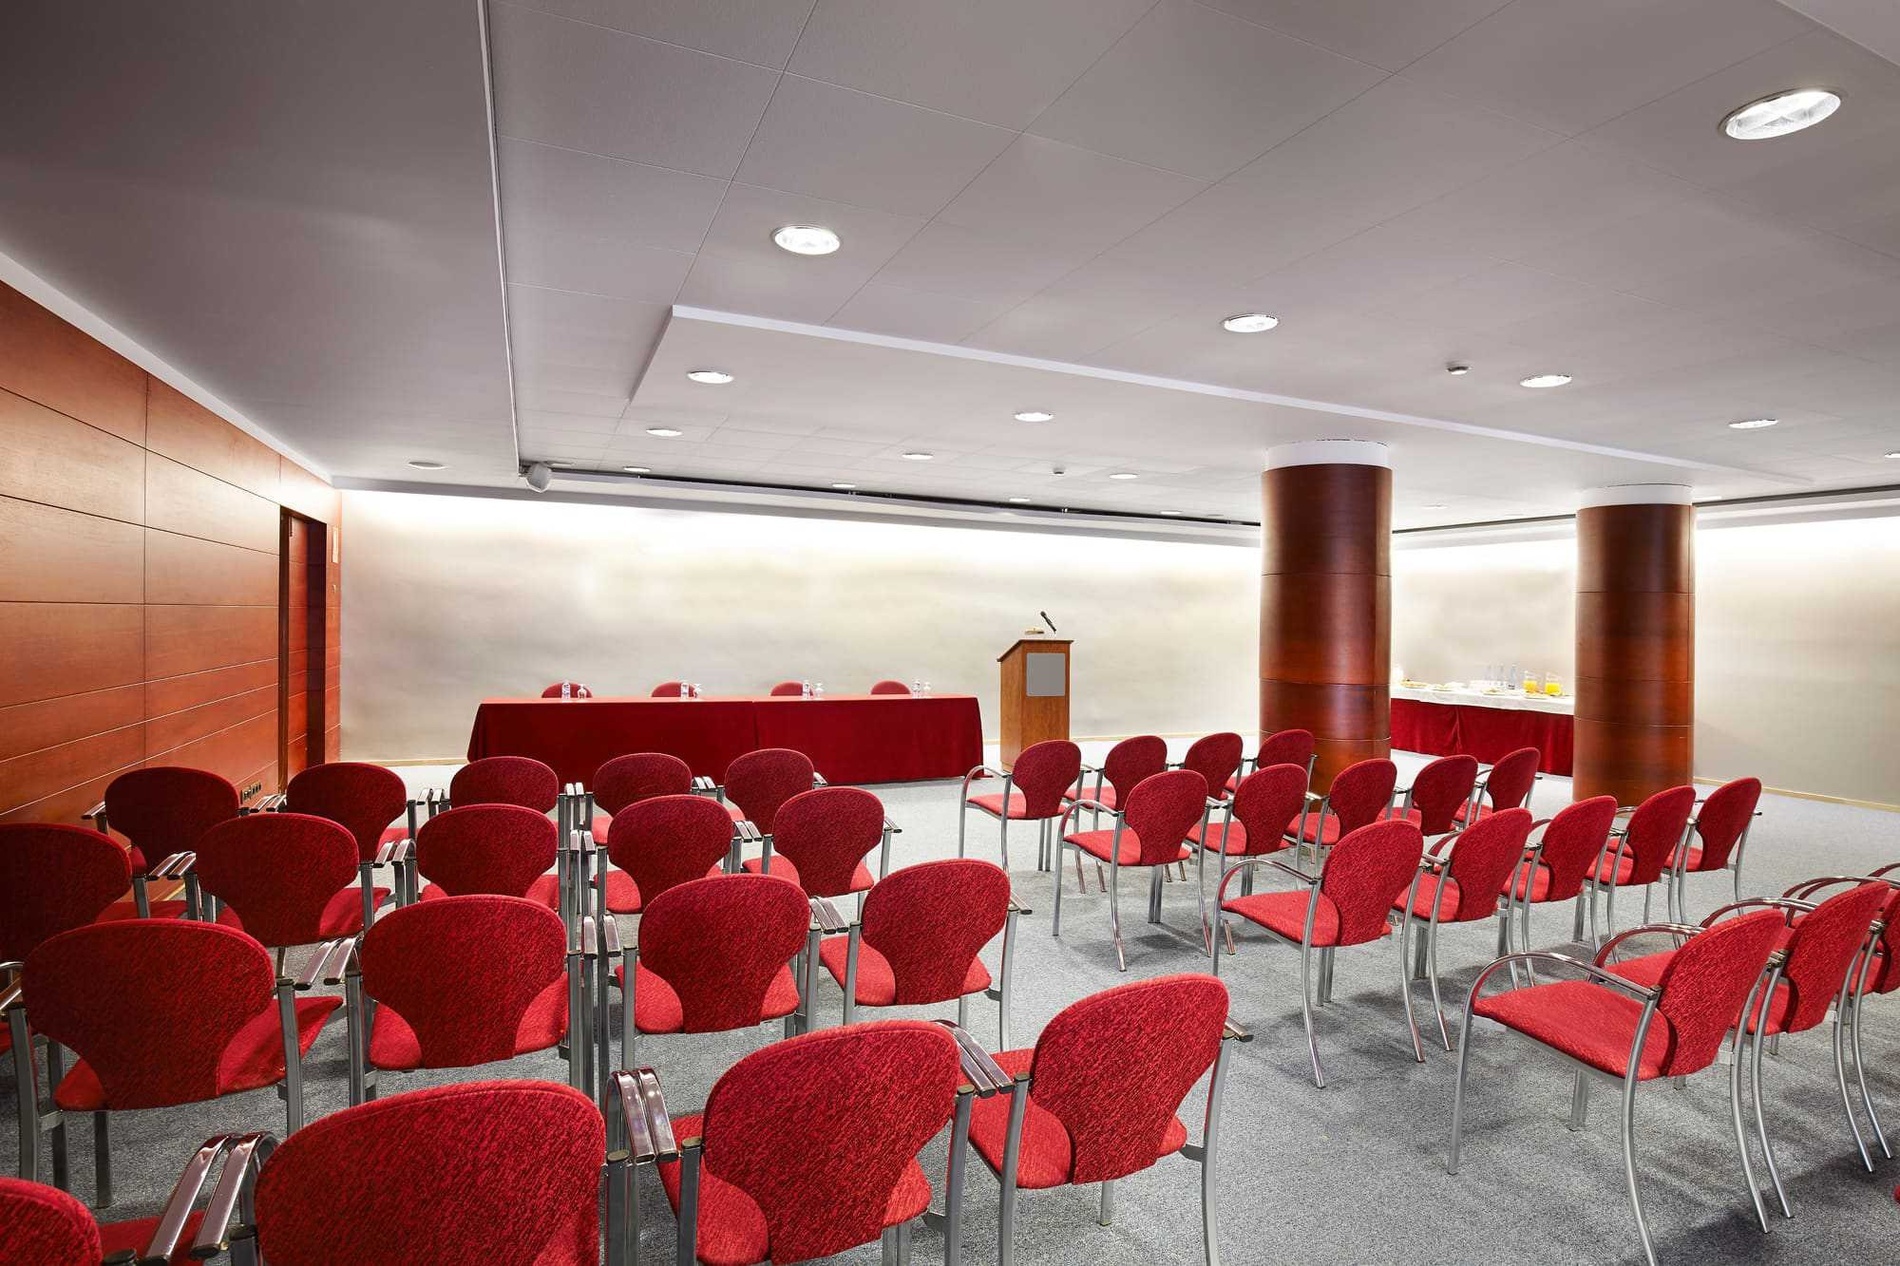 Sala para eventos y reuniones de empresas en el centro de Andorra